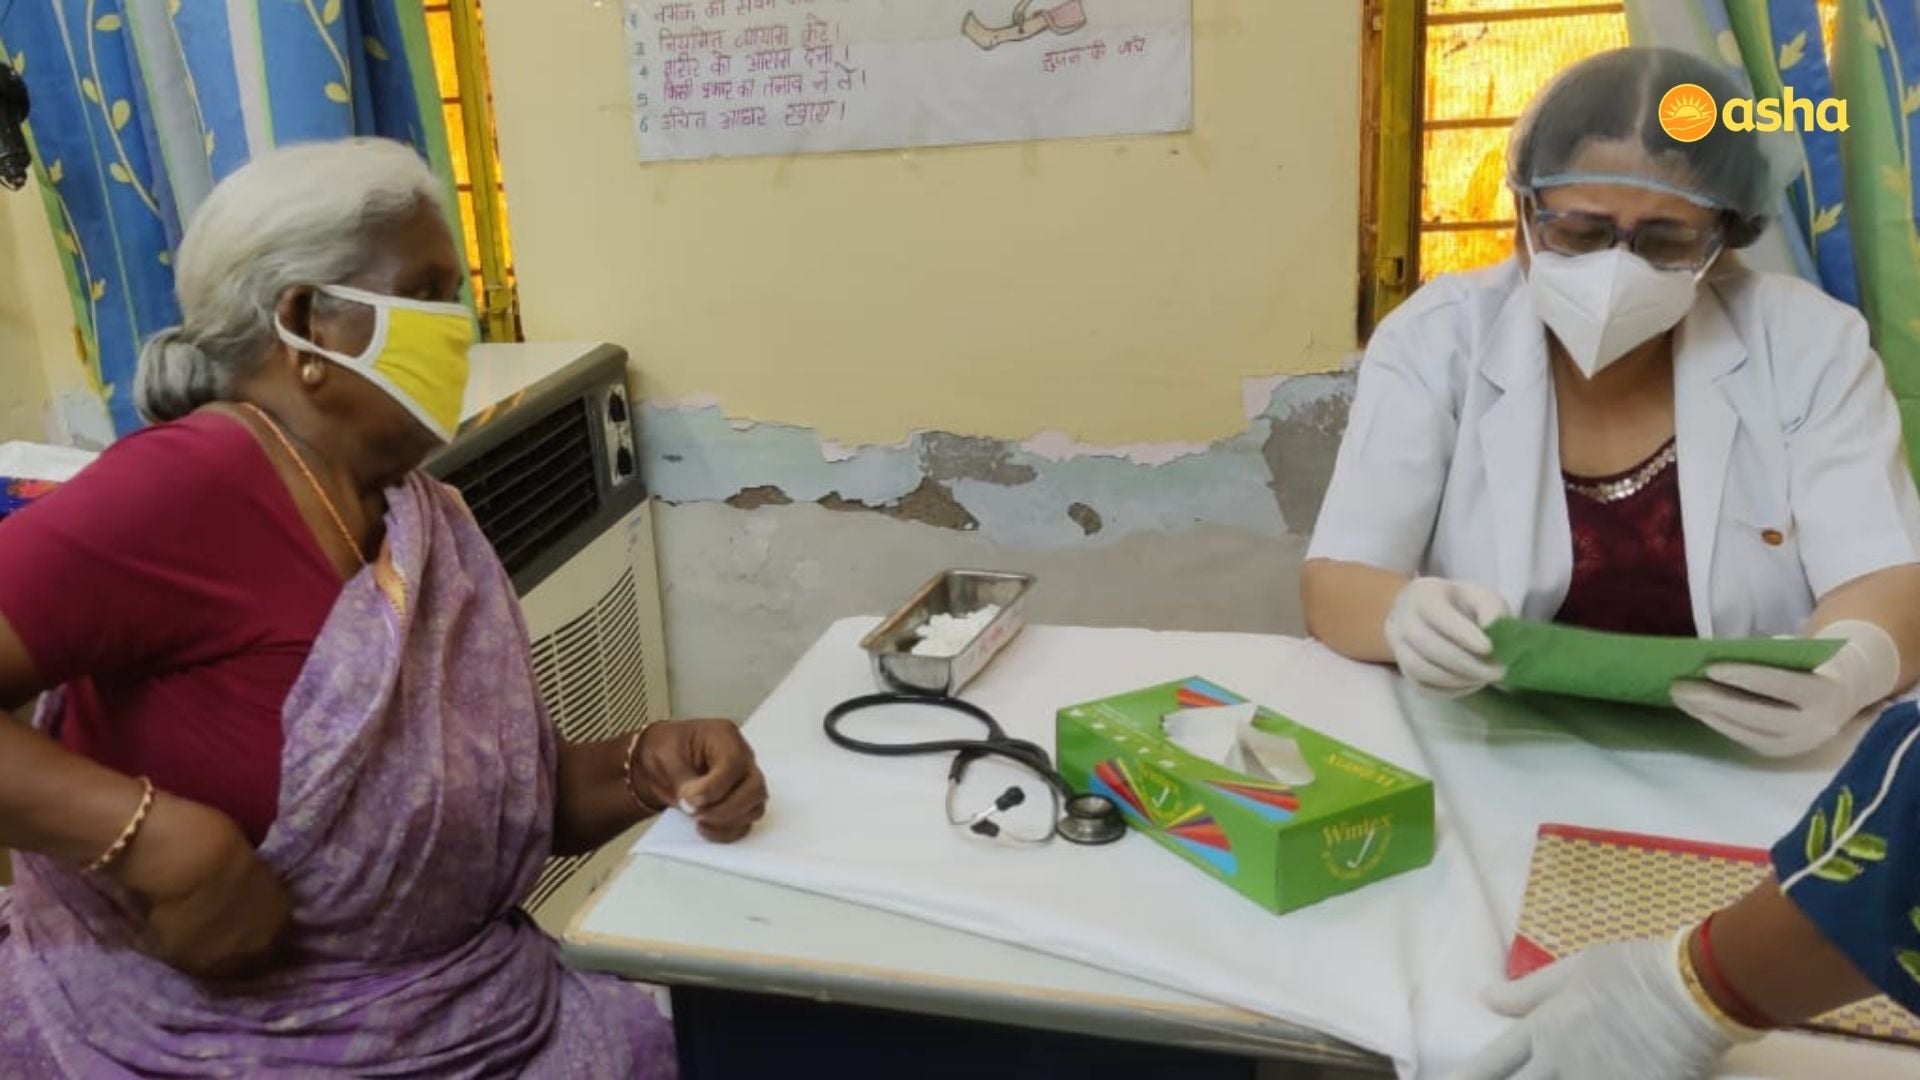 Dr Kiran visits Kusumpur Pahari slum community and runs a clinic